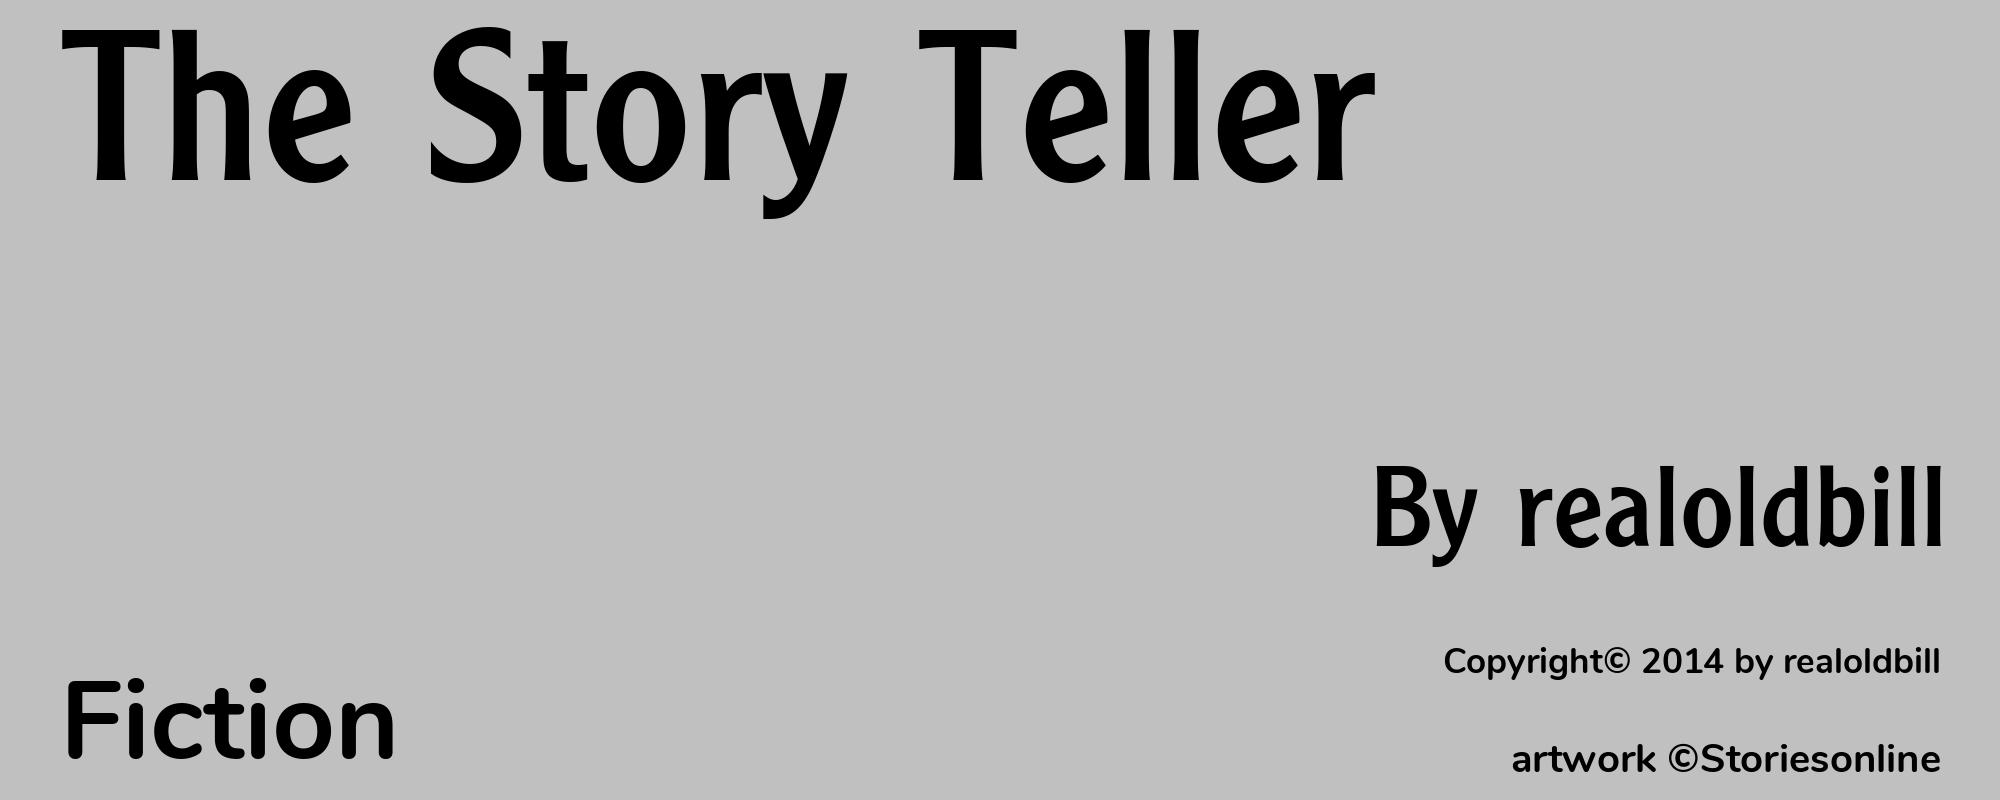 The Story Teller - Cover